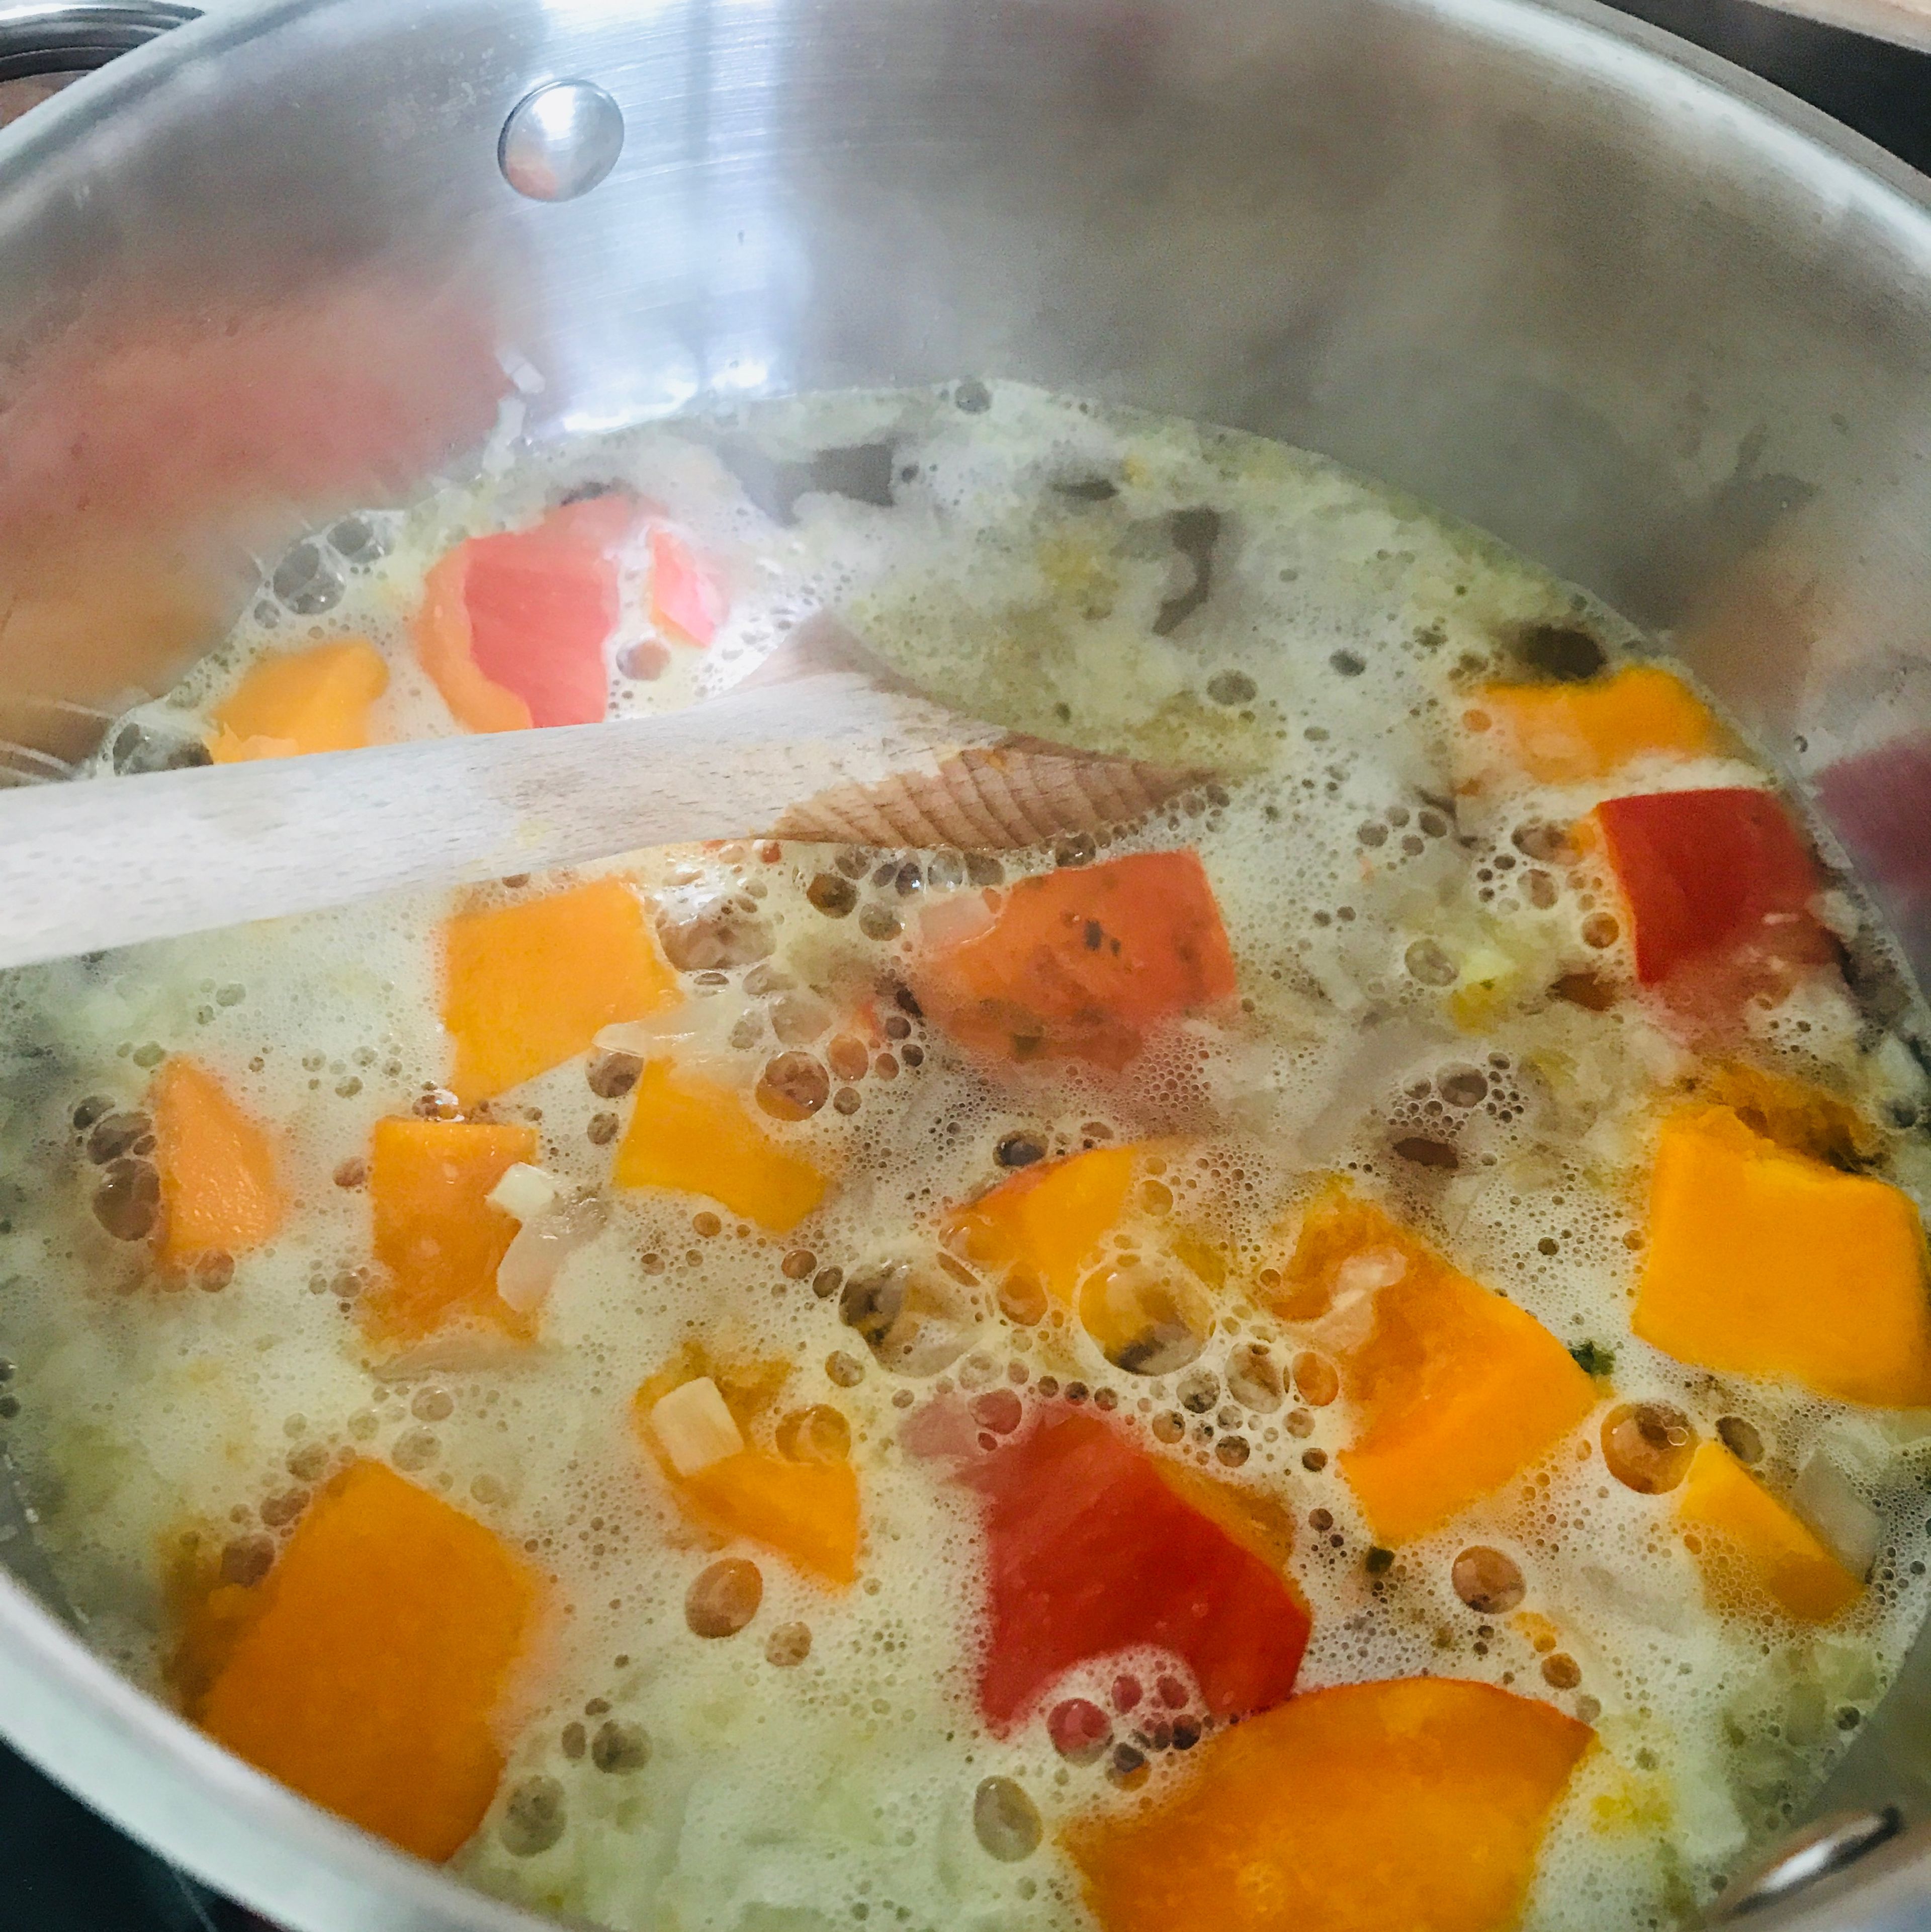 Öl erhitzen und Zwiebel anschwitzen. Mit Brühe aufgießen und Kürbis dazugeben, ca. 15 min kochen lassen.